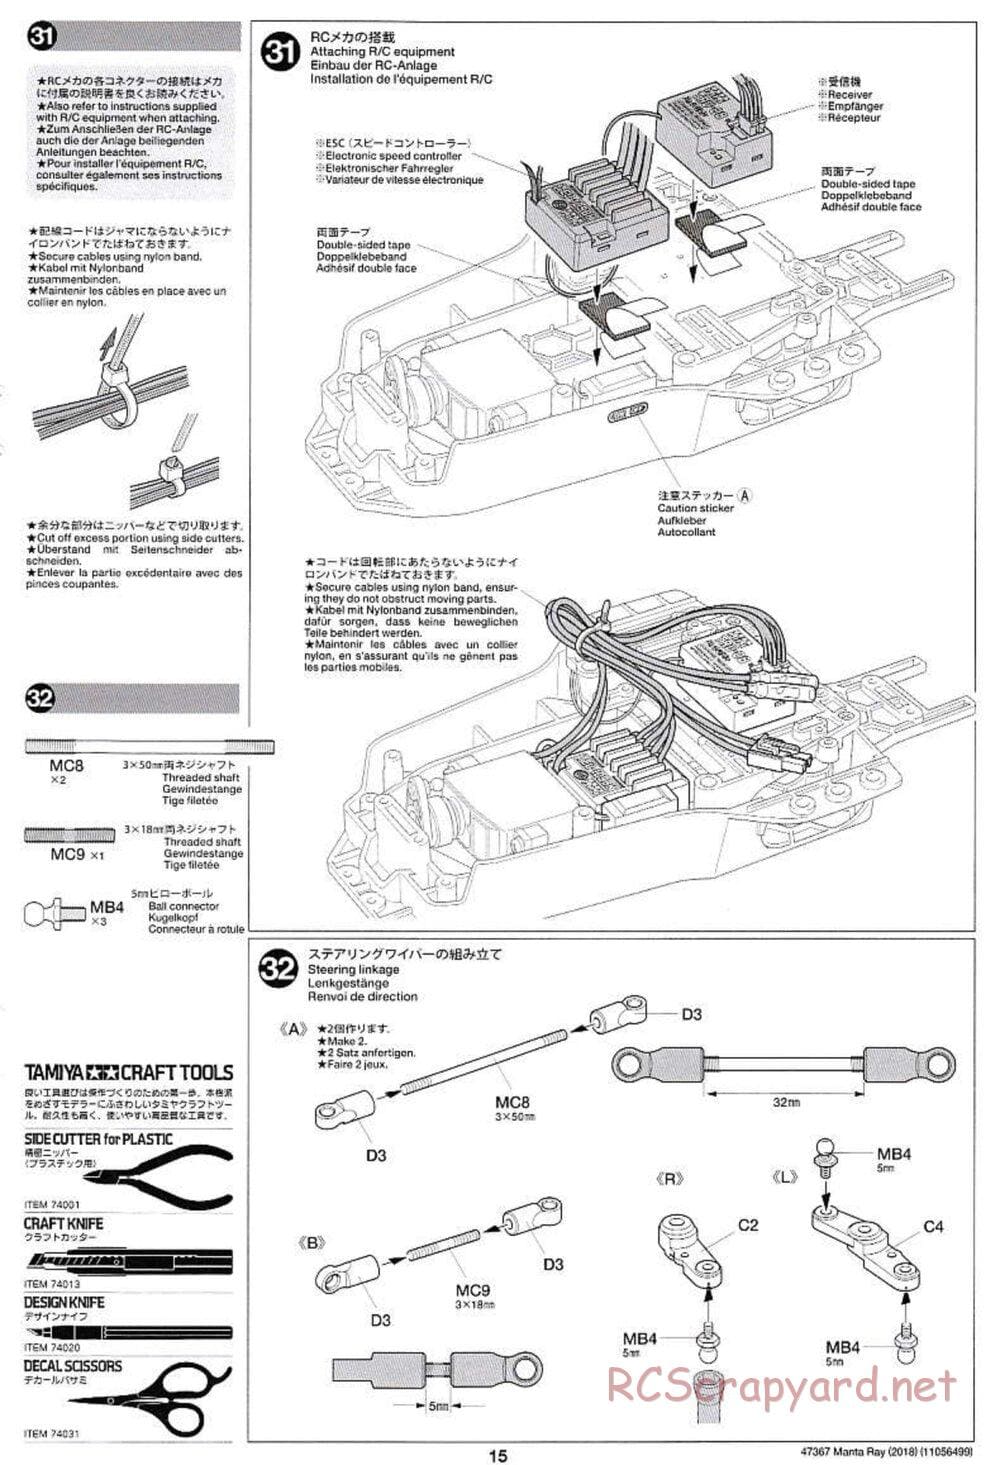 Tamiya - Manta Ray 2018 - DF-01 Chassis - Manual - Page 15